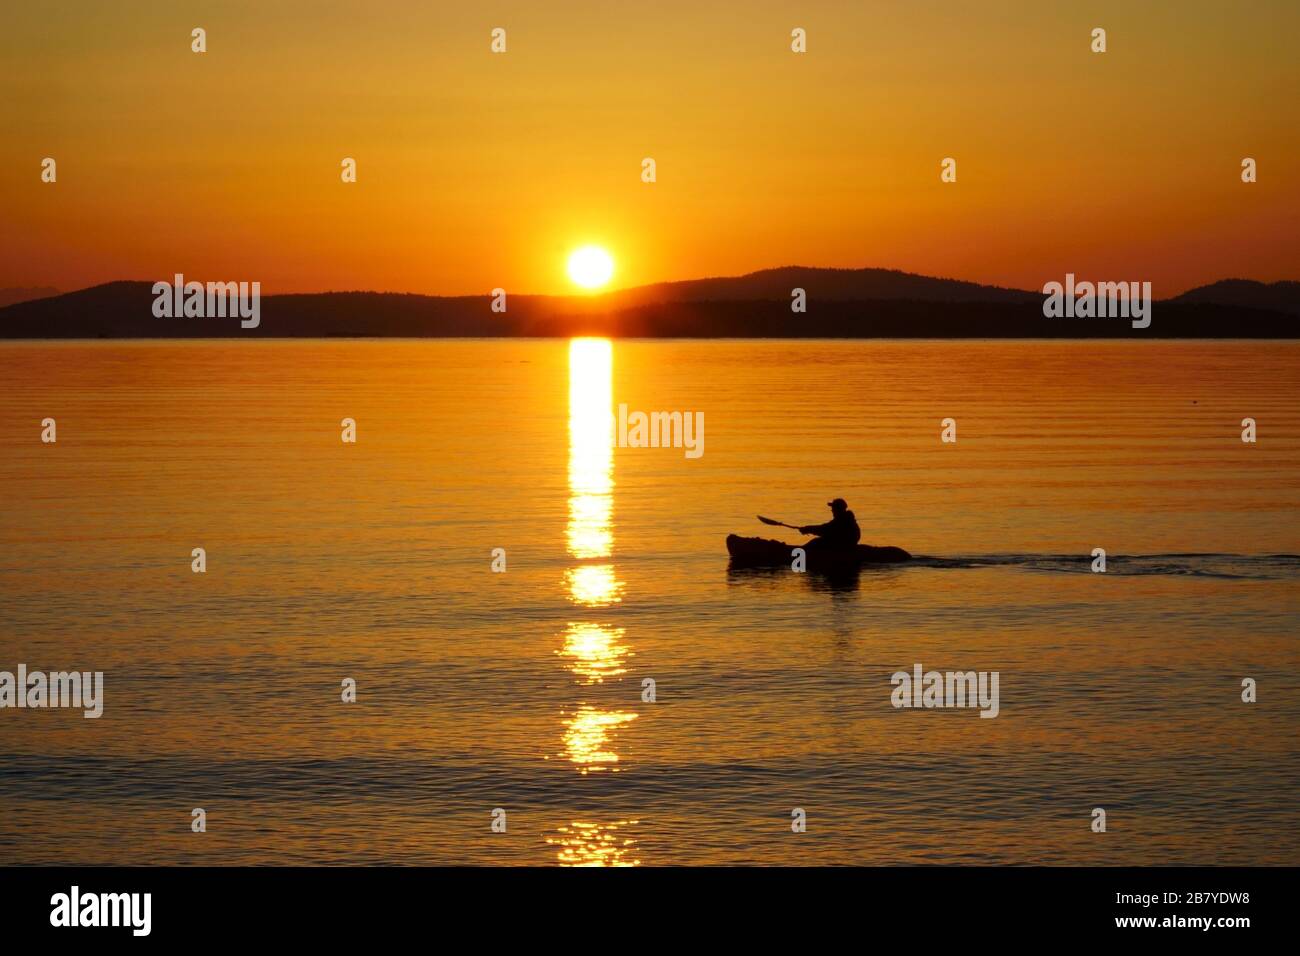 Amanecer en el estrecho de Haro mientras un remo impulsa su kayak a través del sol. Foto de stock